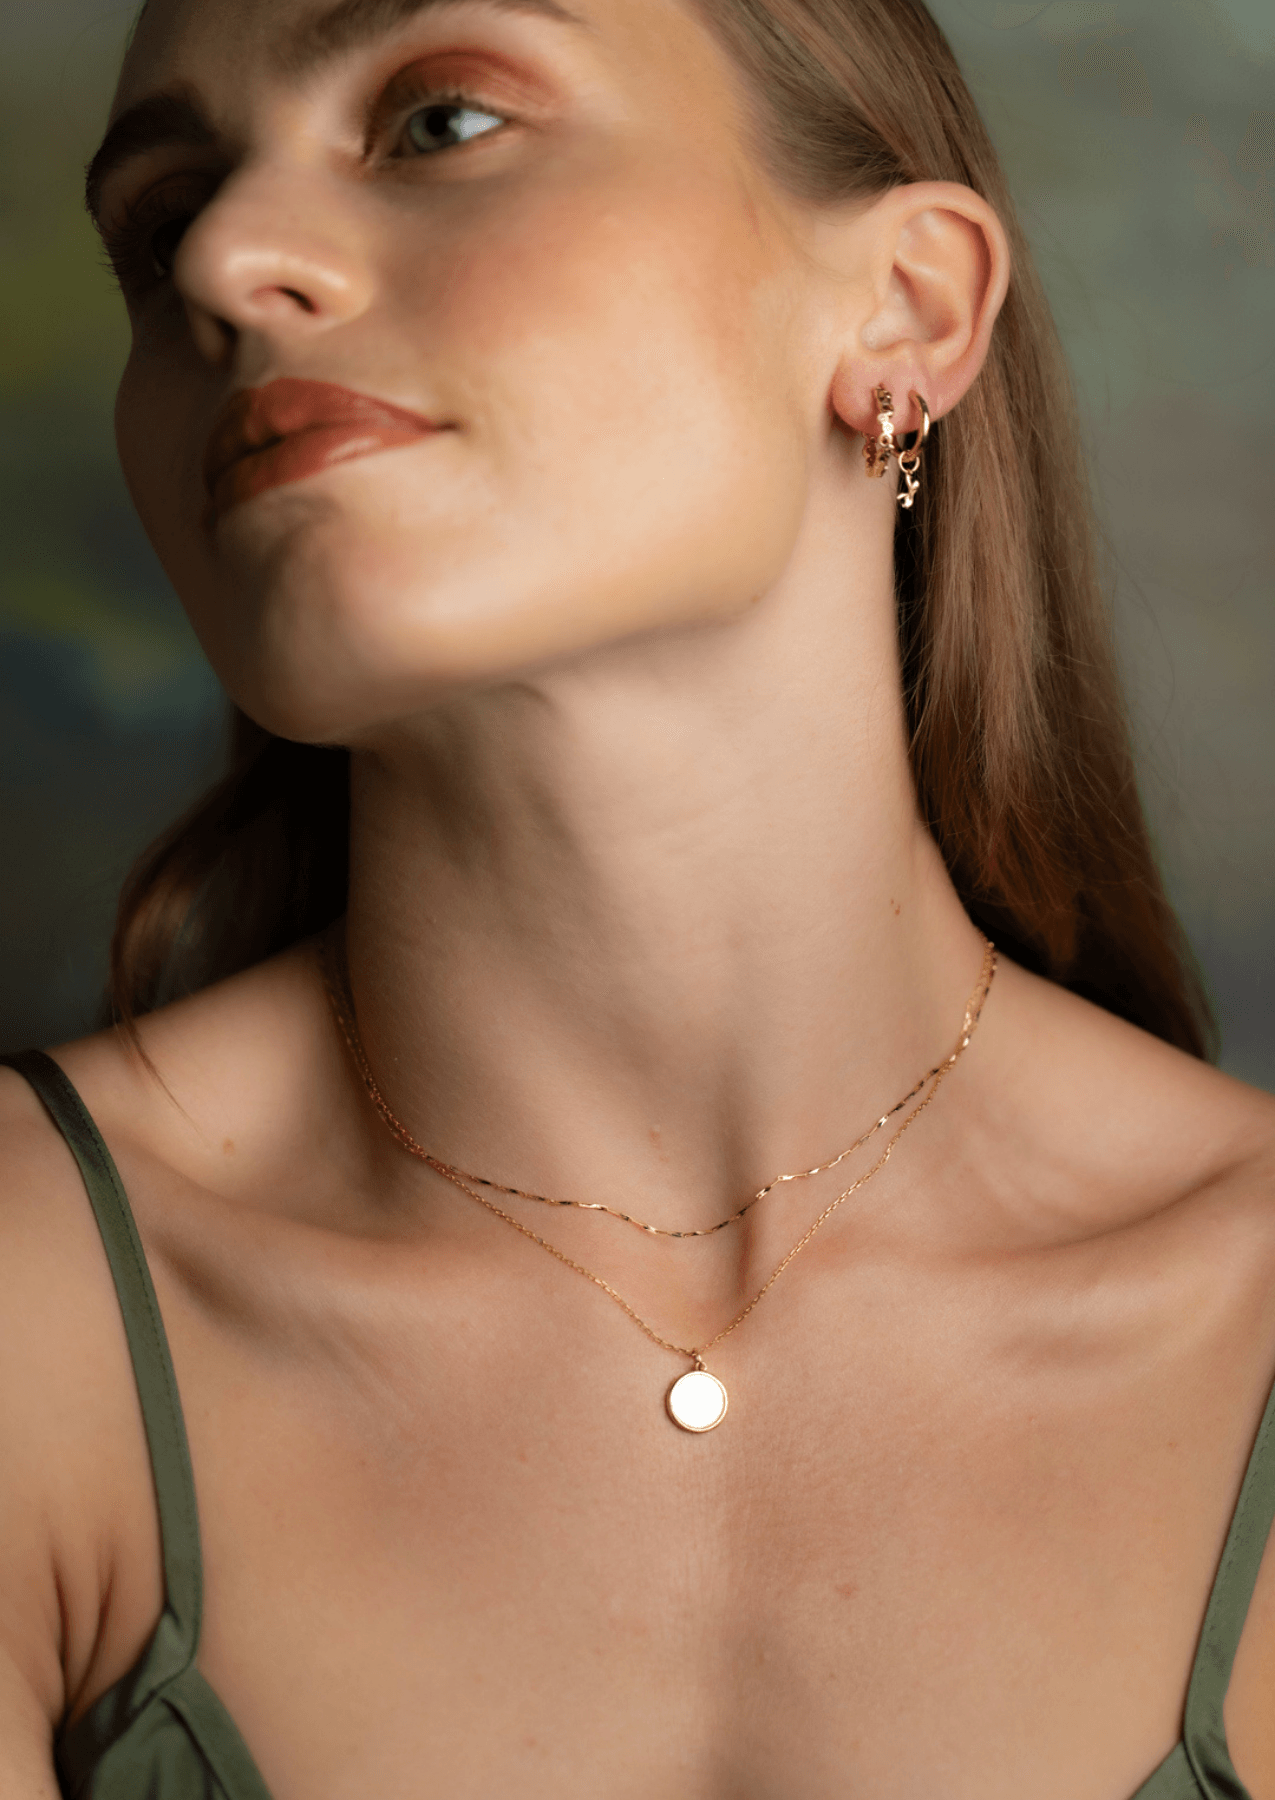 Shop Luxury 18ct Gold Necklaces — Annoushka EU